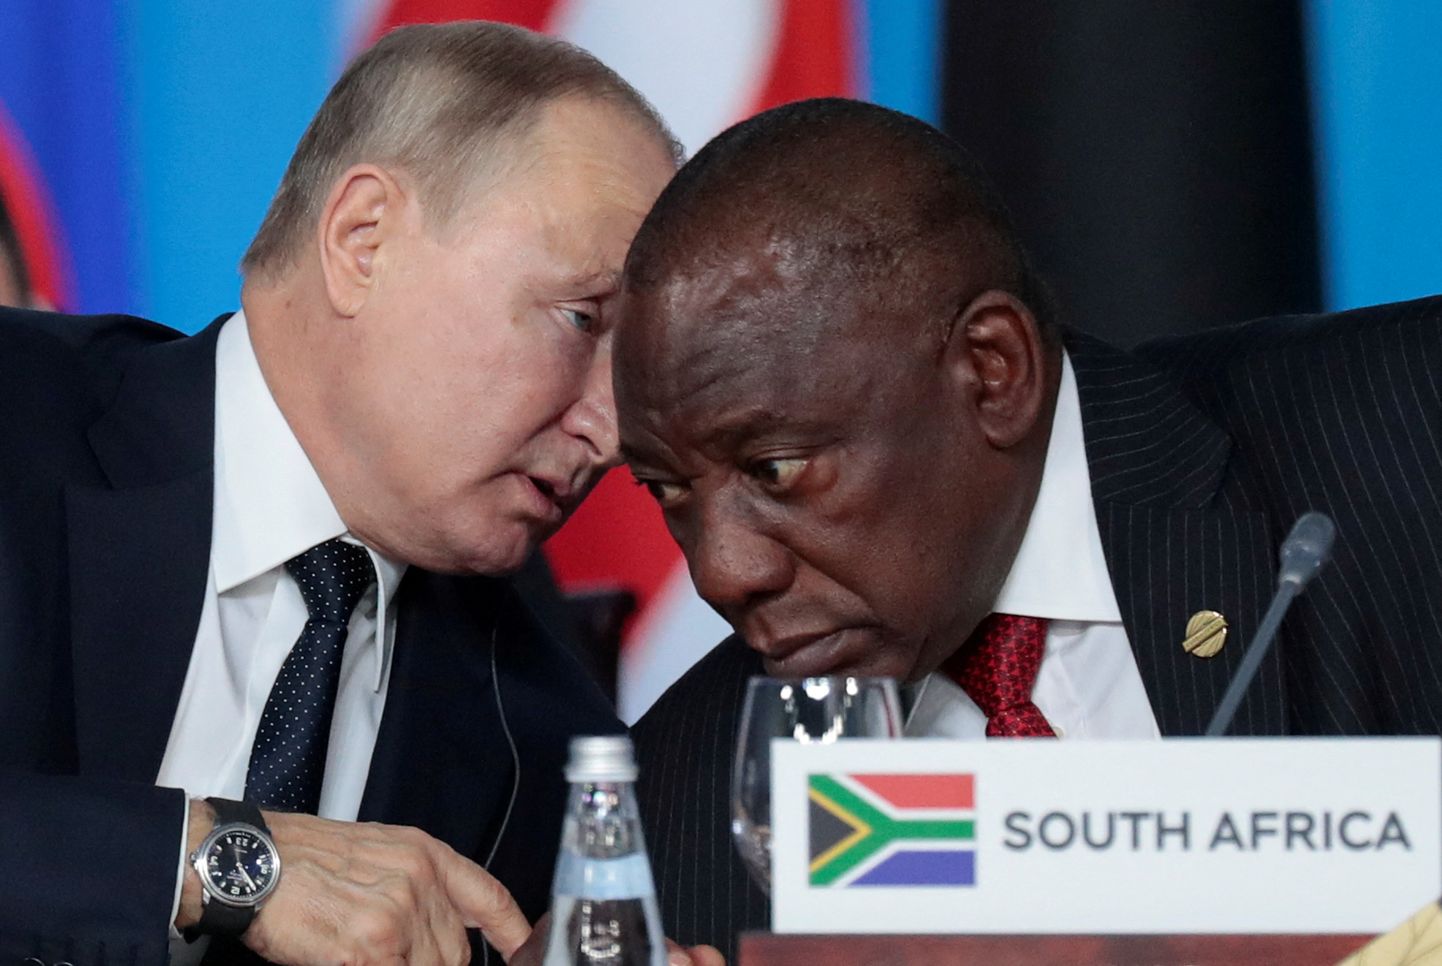 Vladimir Putin ja Cyril Ramaphosa 2019. aastal kohtumisel Sotšis